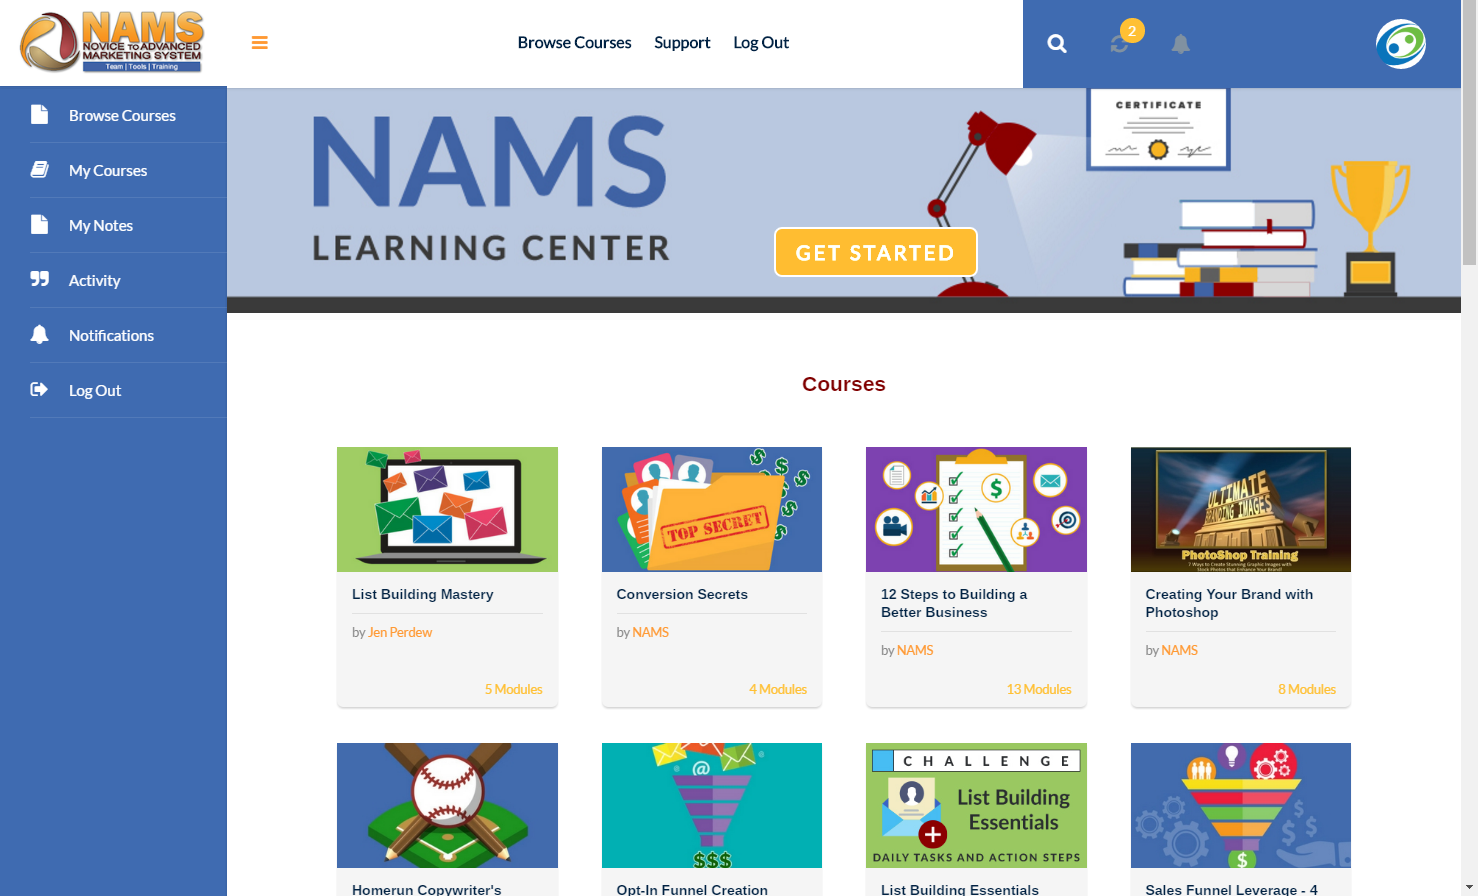 NAMS Learning Center